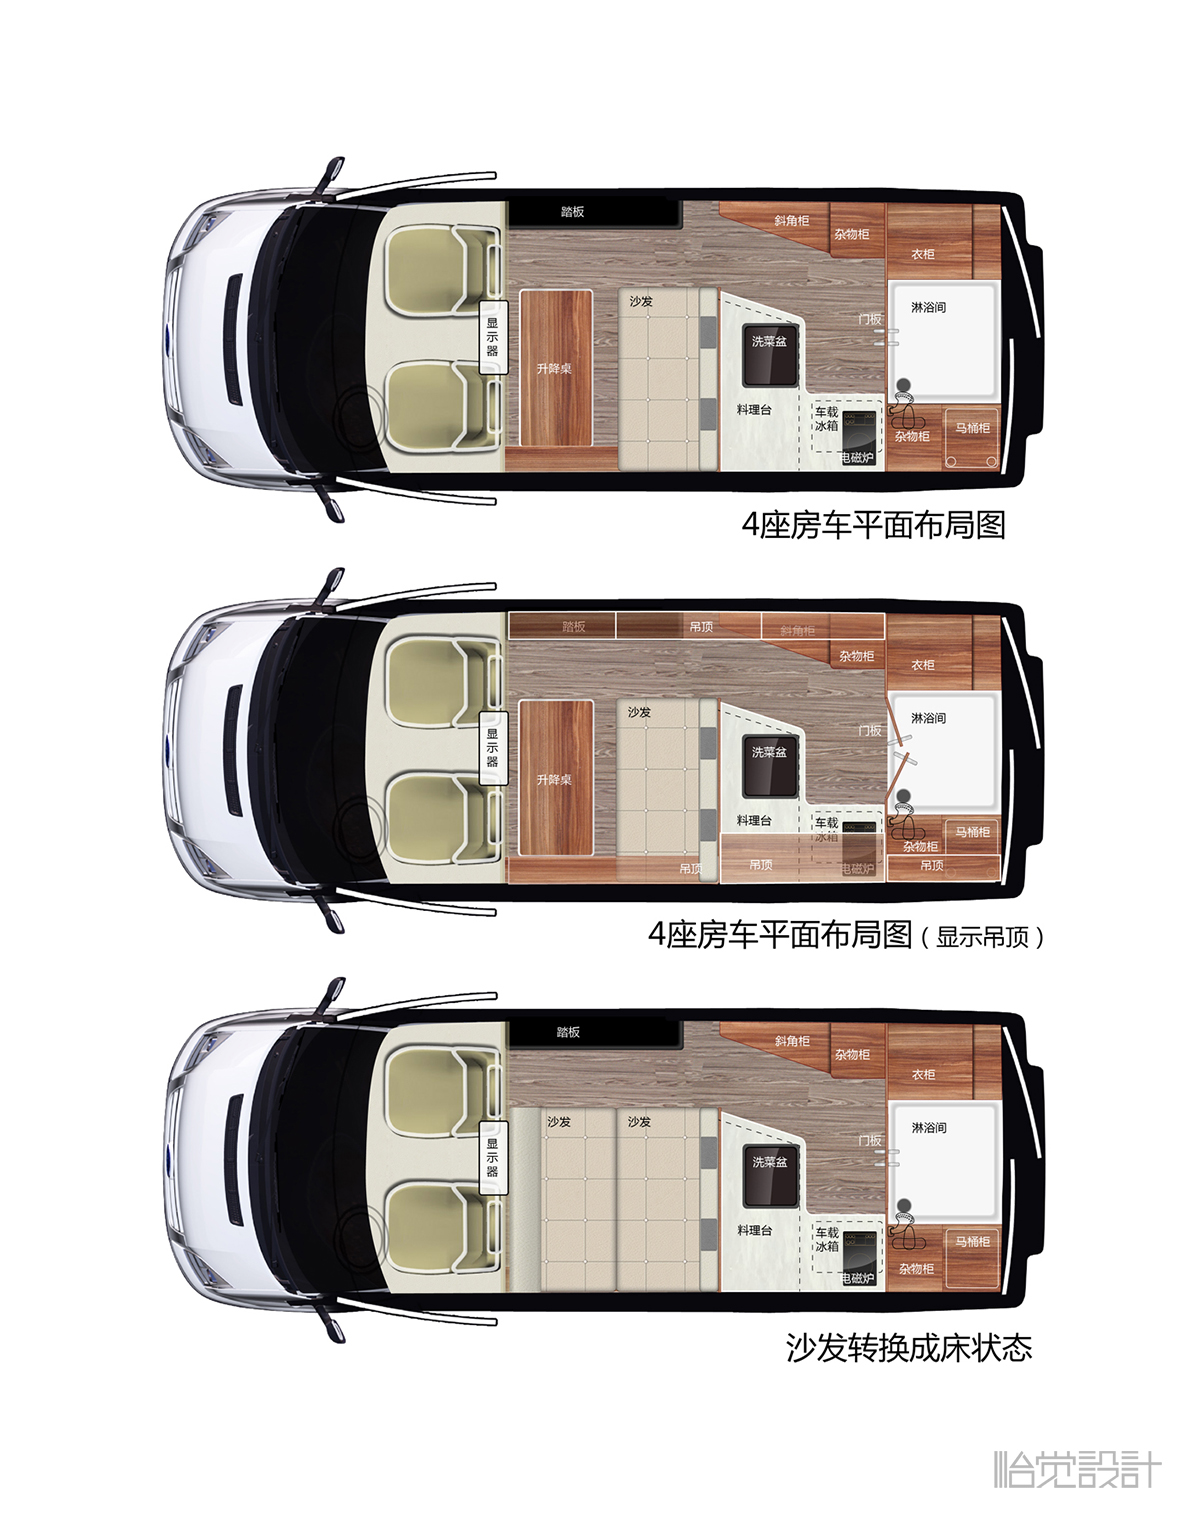 旅居车-商务车-房车-改装车-特种车-车辆设计-怡觉设计 (5).jpg